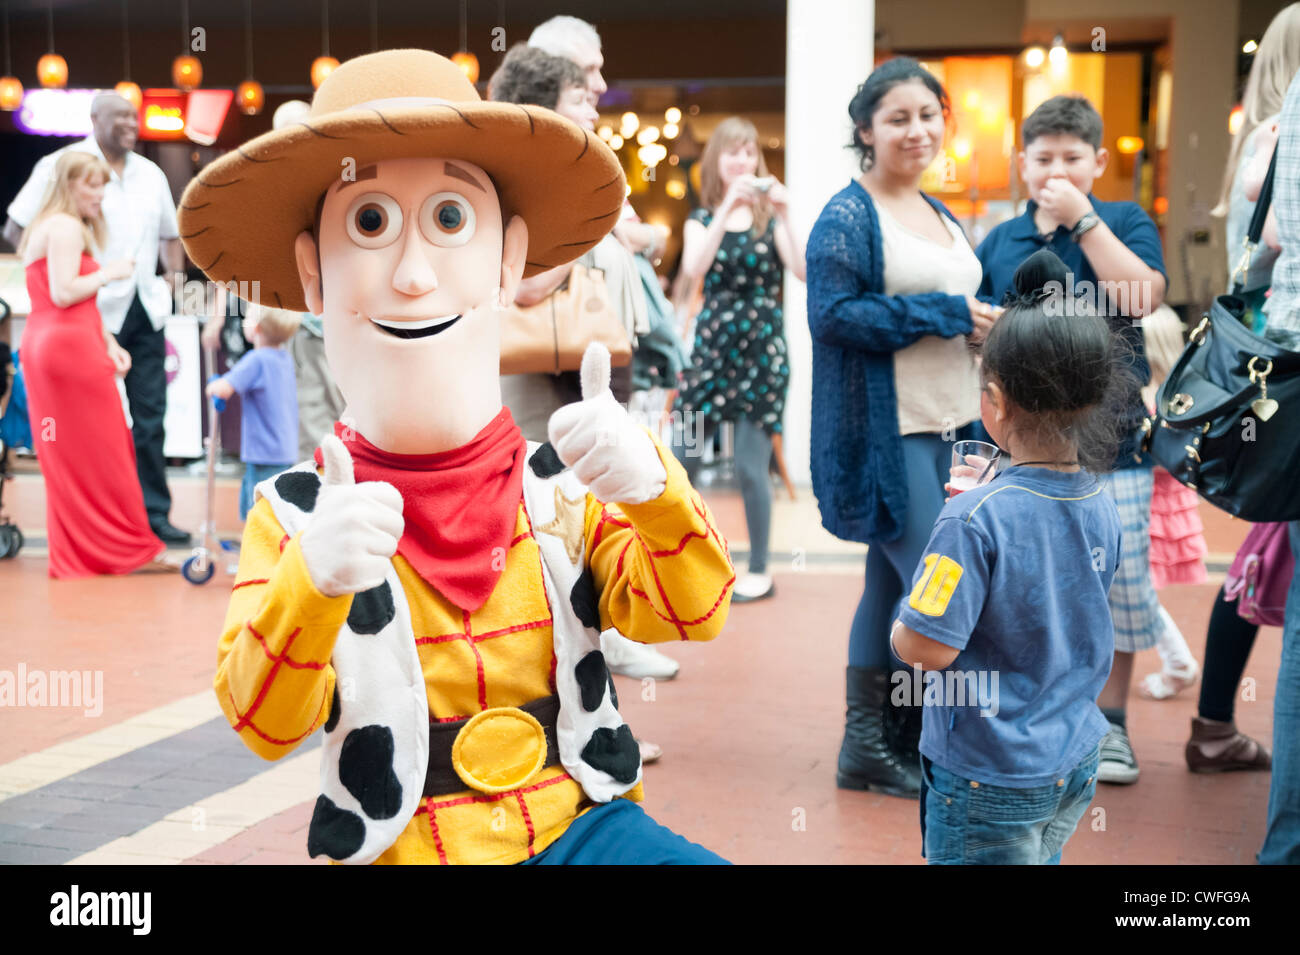 Pour l'artiste du caractère boisé de 'Toy Story', Cardiff, Pays de Galles. Les enfants avec un homme habillé comme un personnage de Walt Disney. Banque D'Images